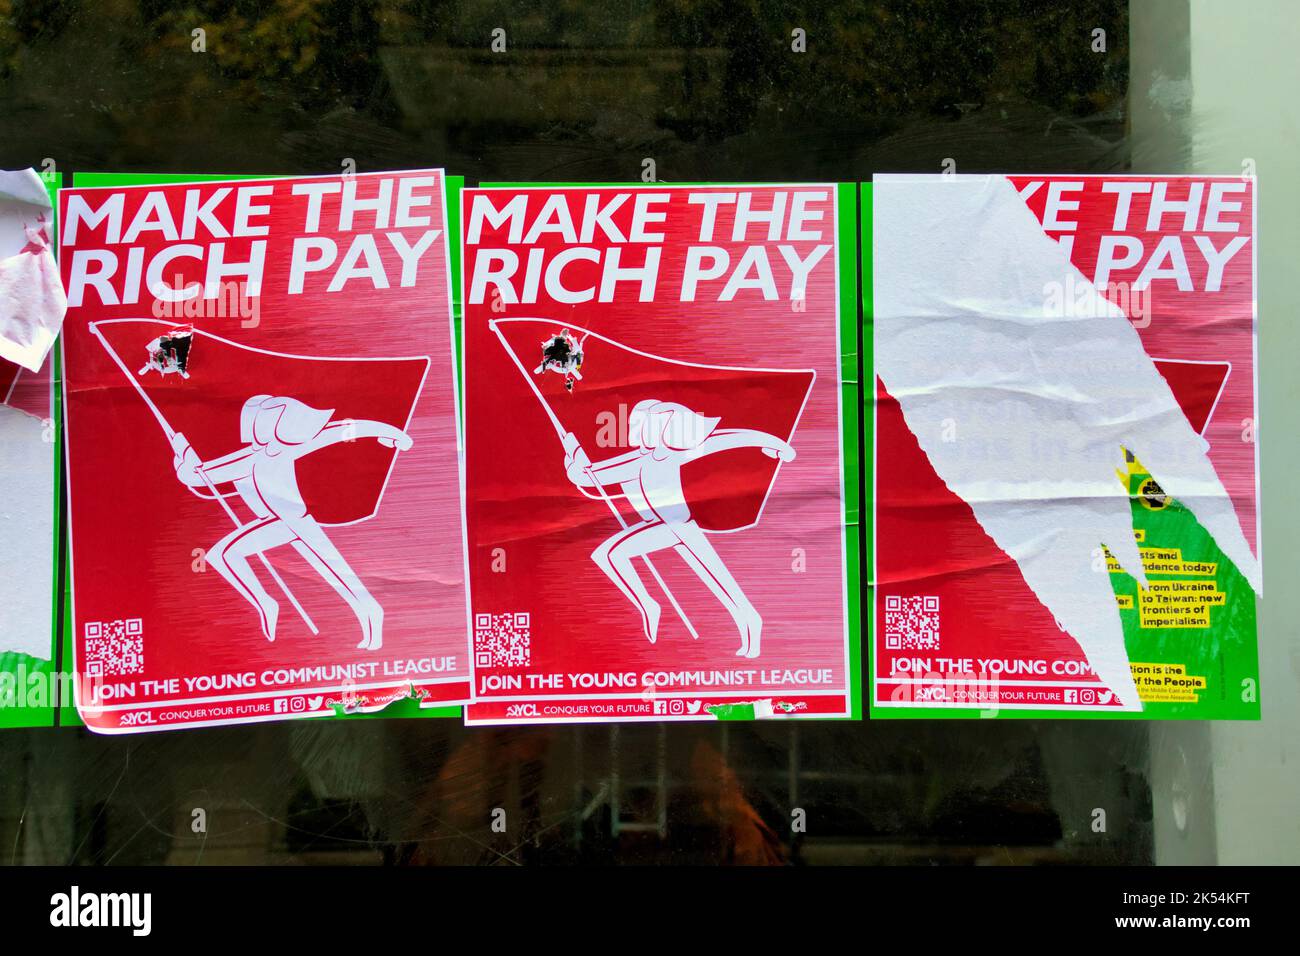 Hacer que los ricos paguen carteles comunistas revolucionarios contra la pobreza de austeridad y la injusticia social Foto de stock